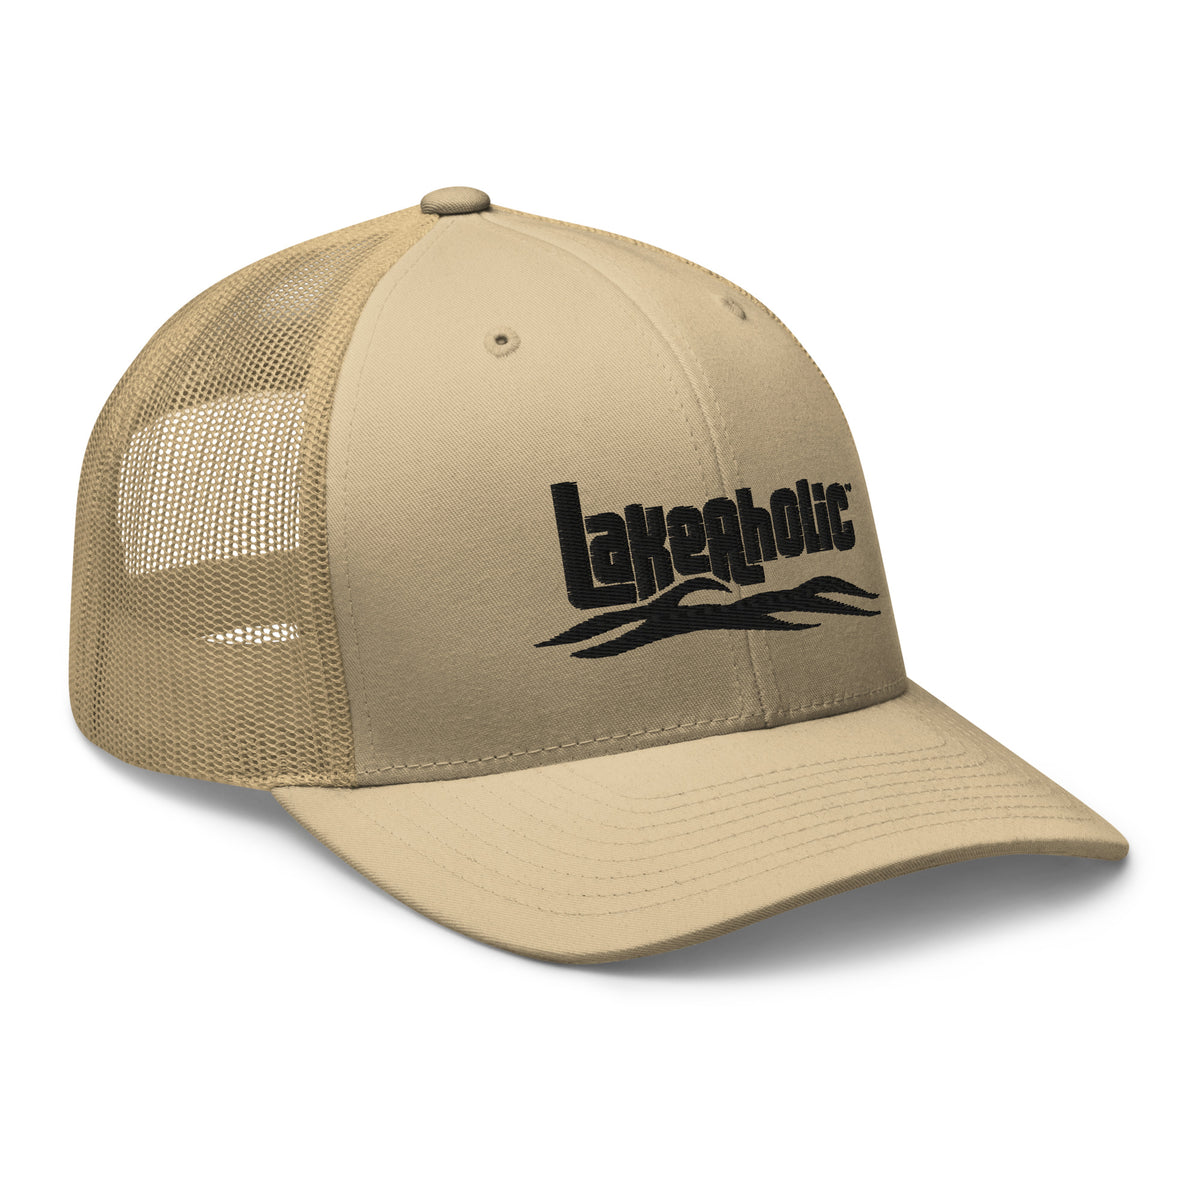 Lakeaholic Trucker Cap